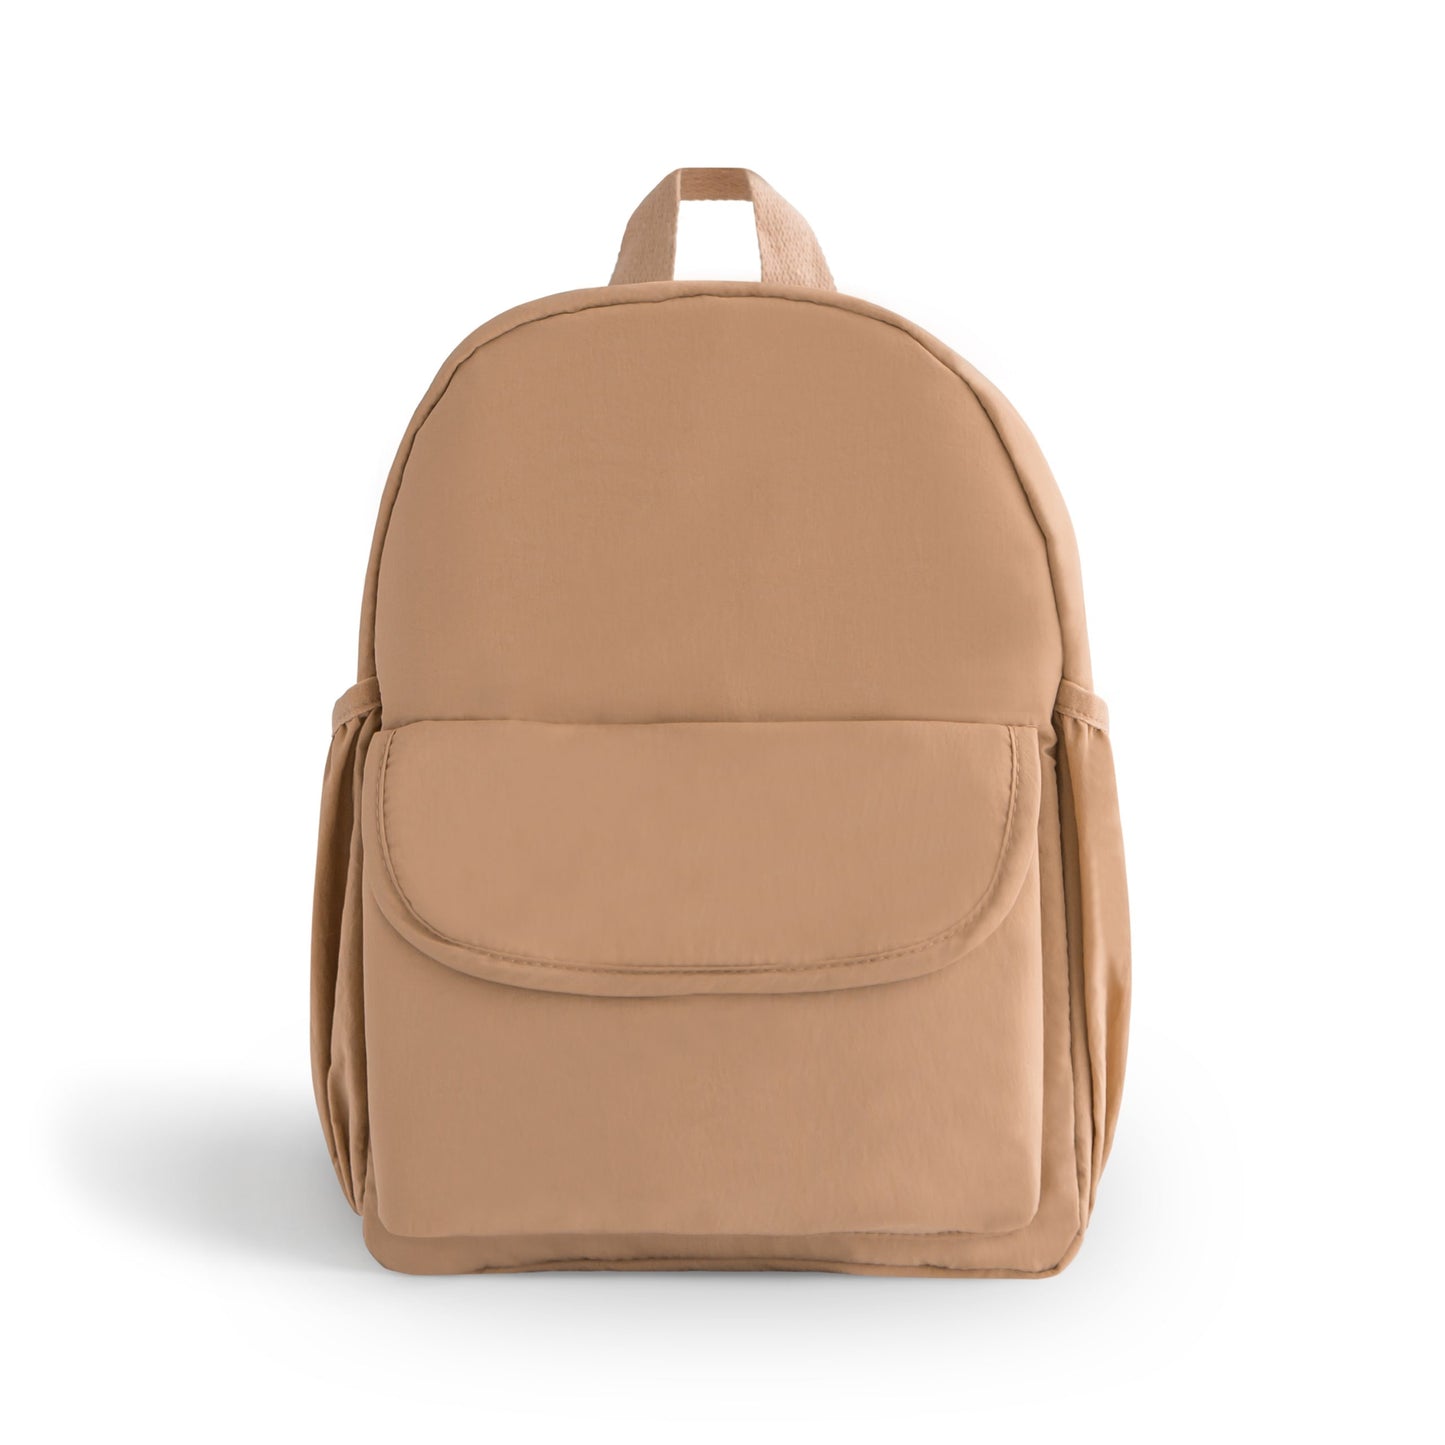 💗 NEW MUSHIE 💗 Kids Mini Backpack